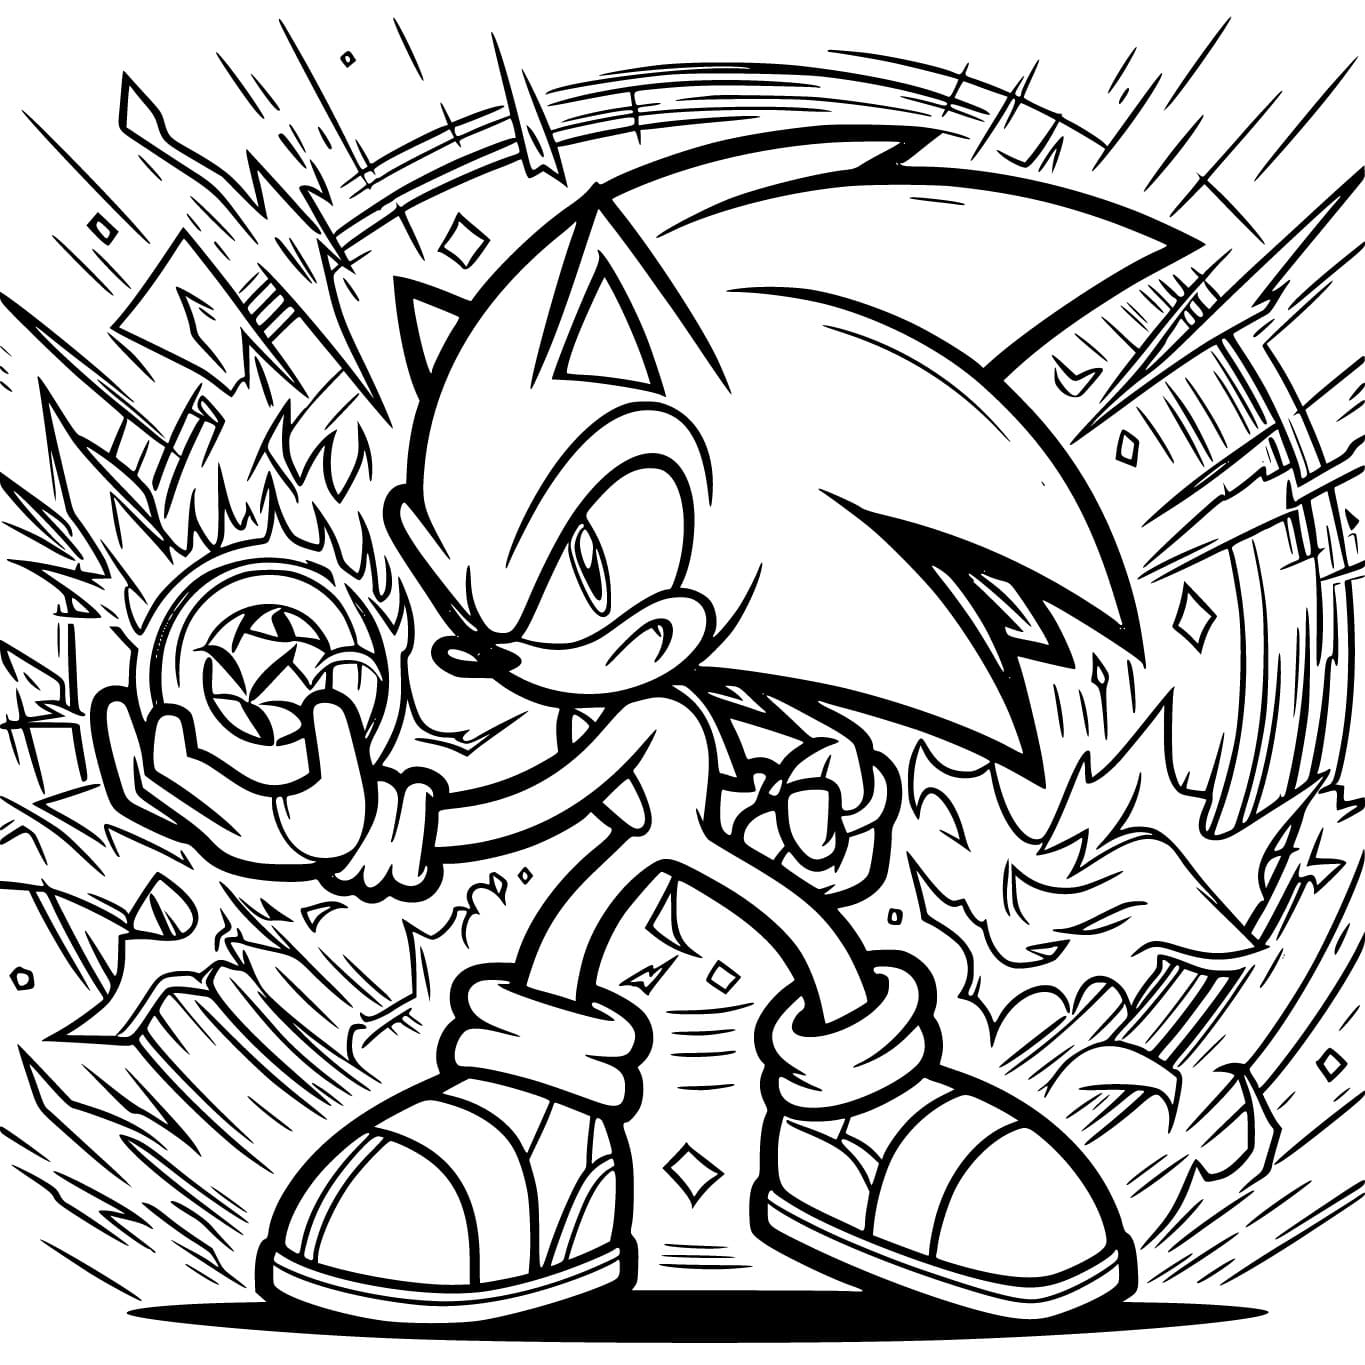 Sonic est Puissant coloring page